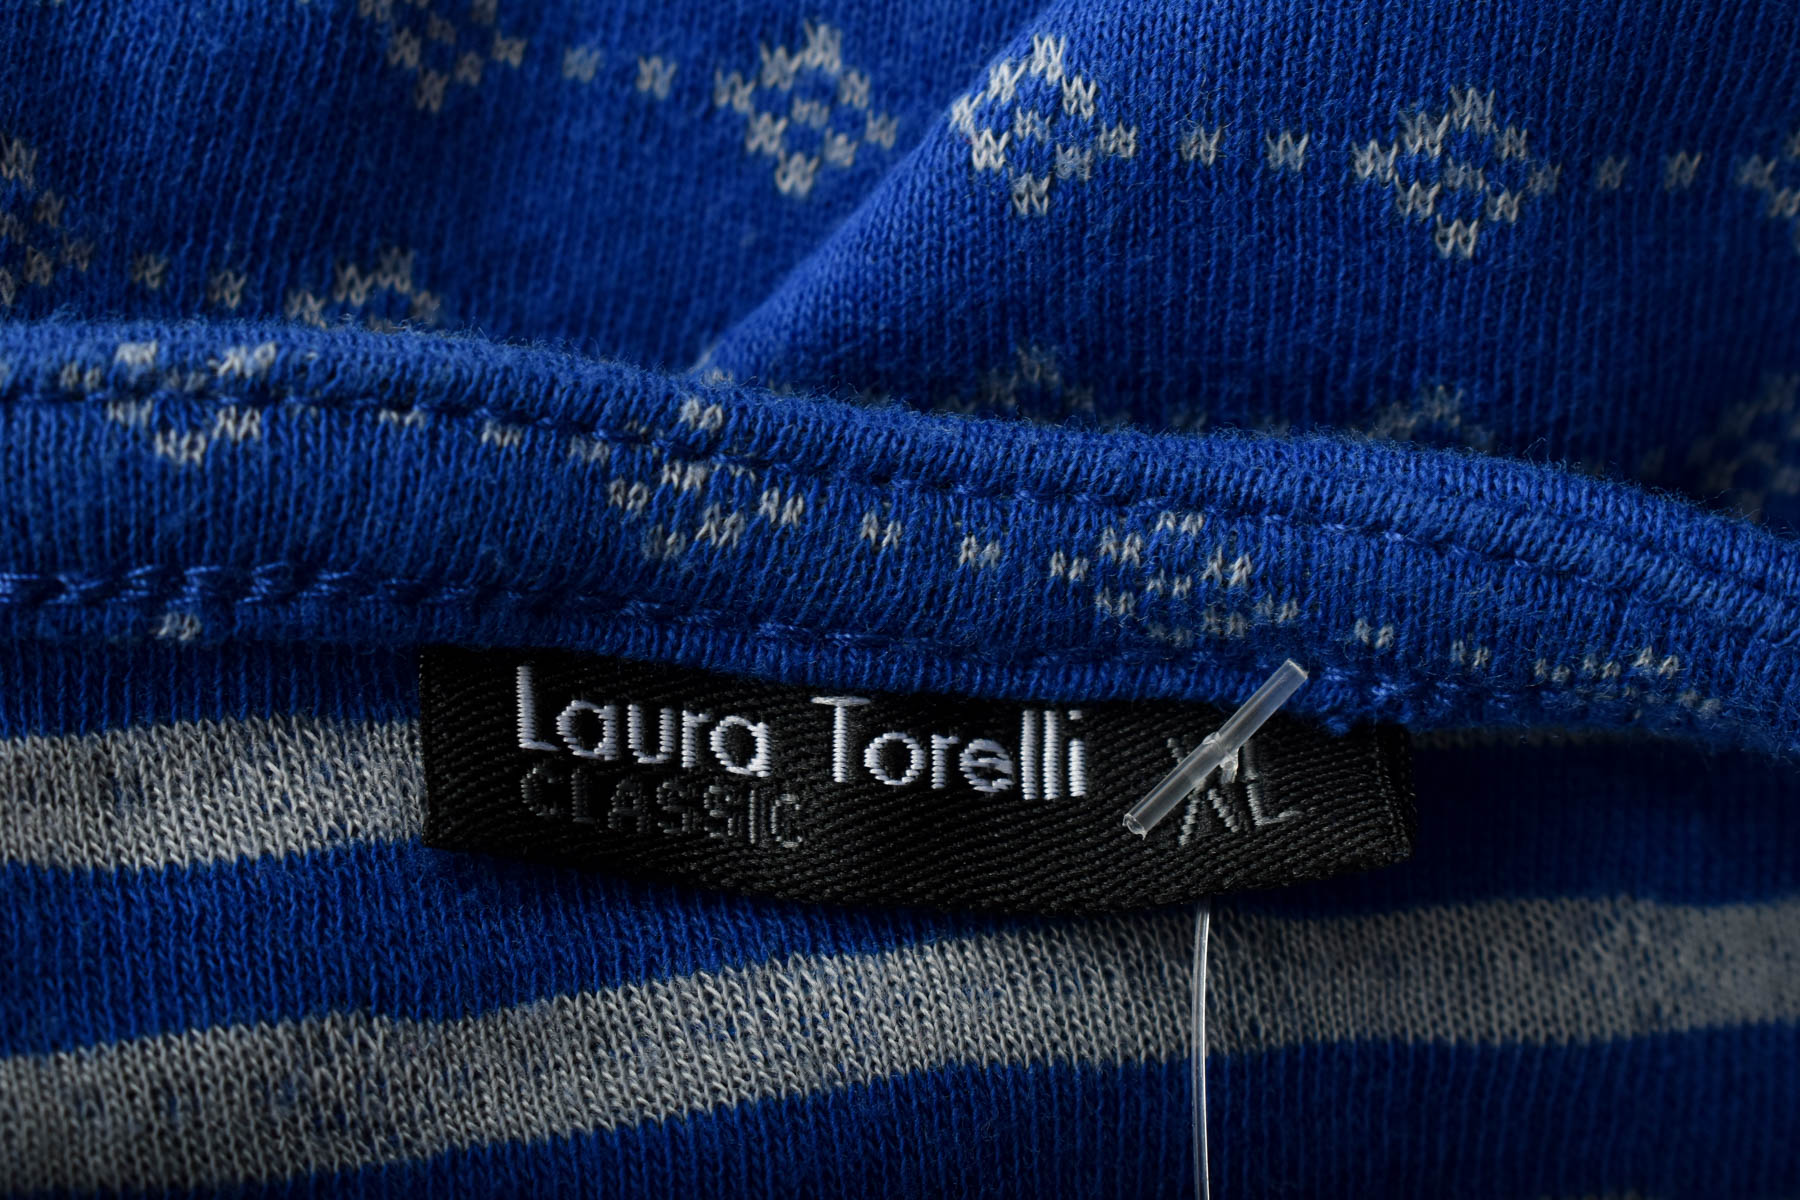 Γυναικεία μπλούζα - Laura Torelli - 2